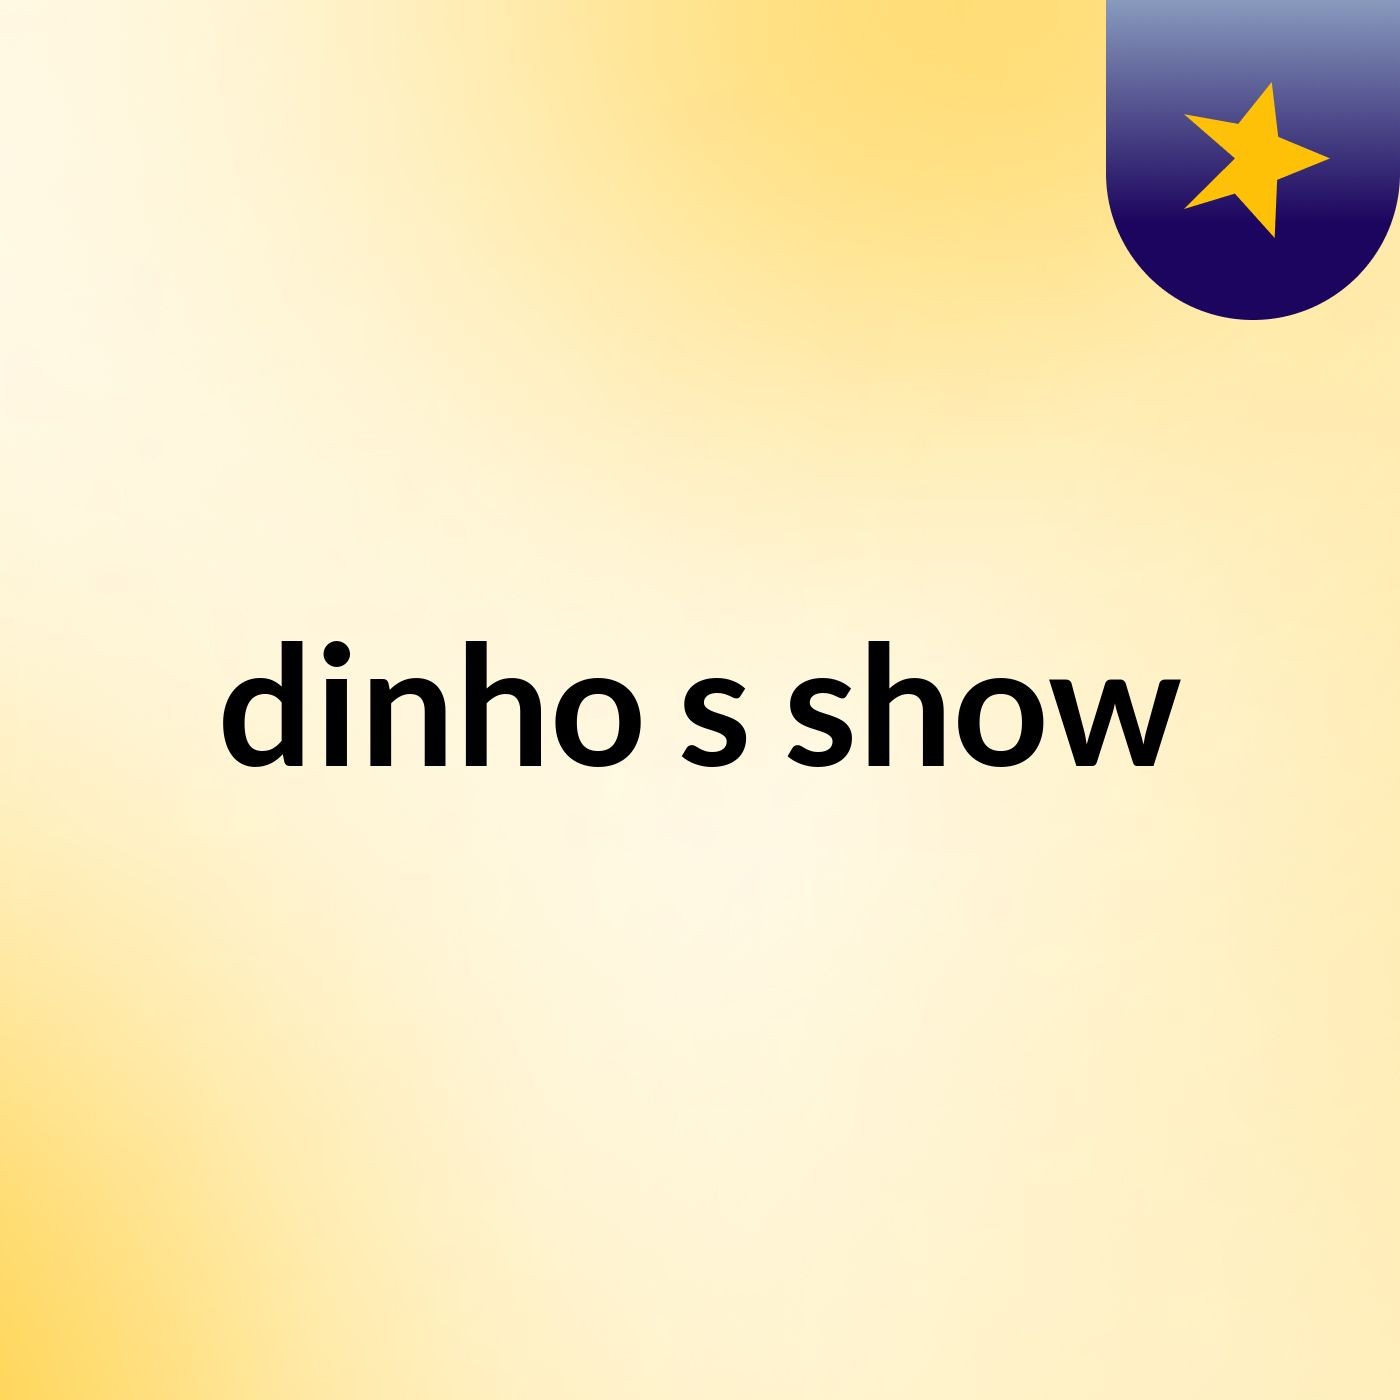 dinho's show